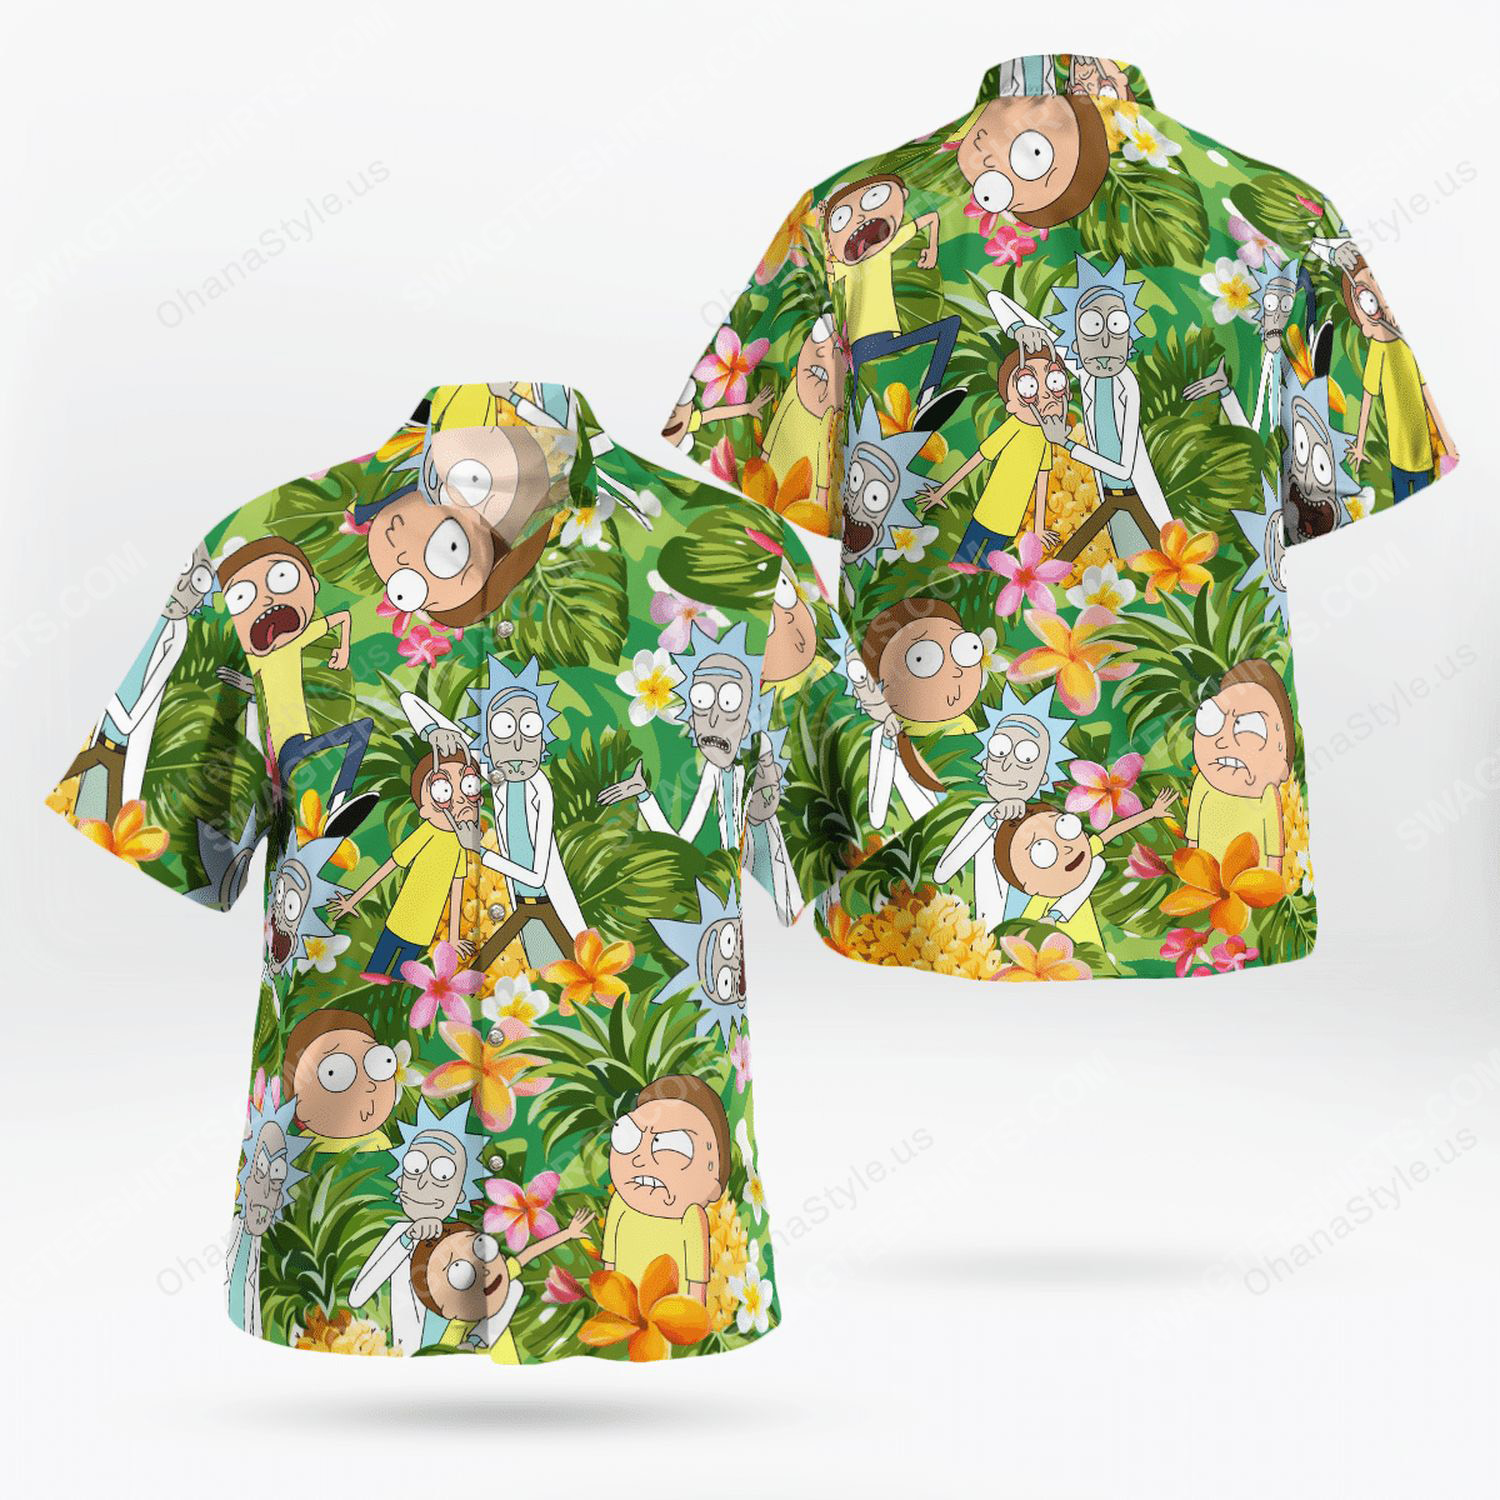 [special edition] Rick and morty tropical hawaiian shirt – maria